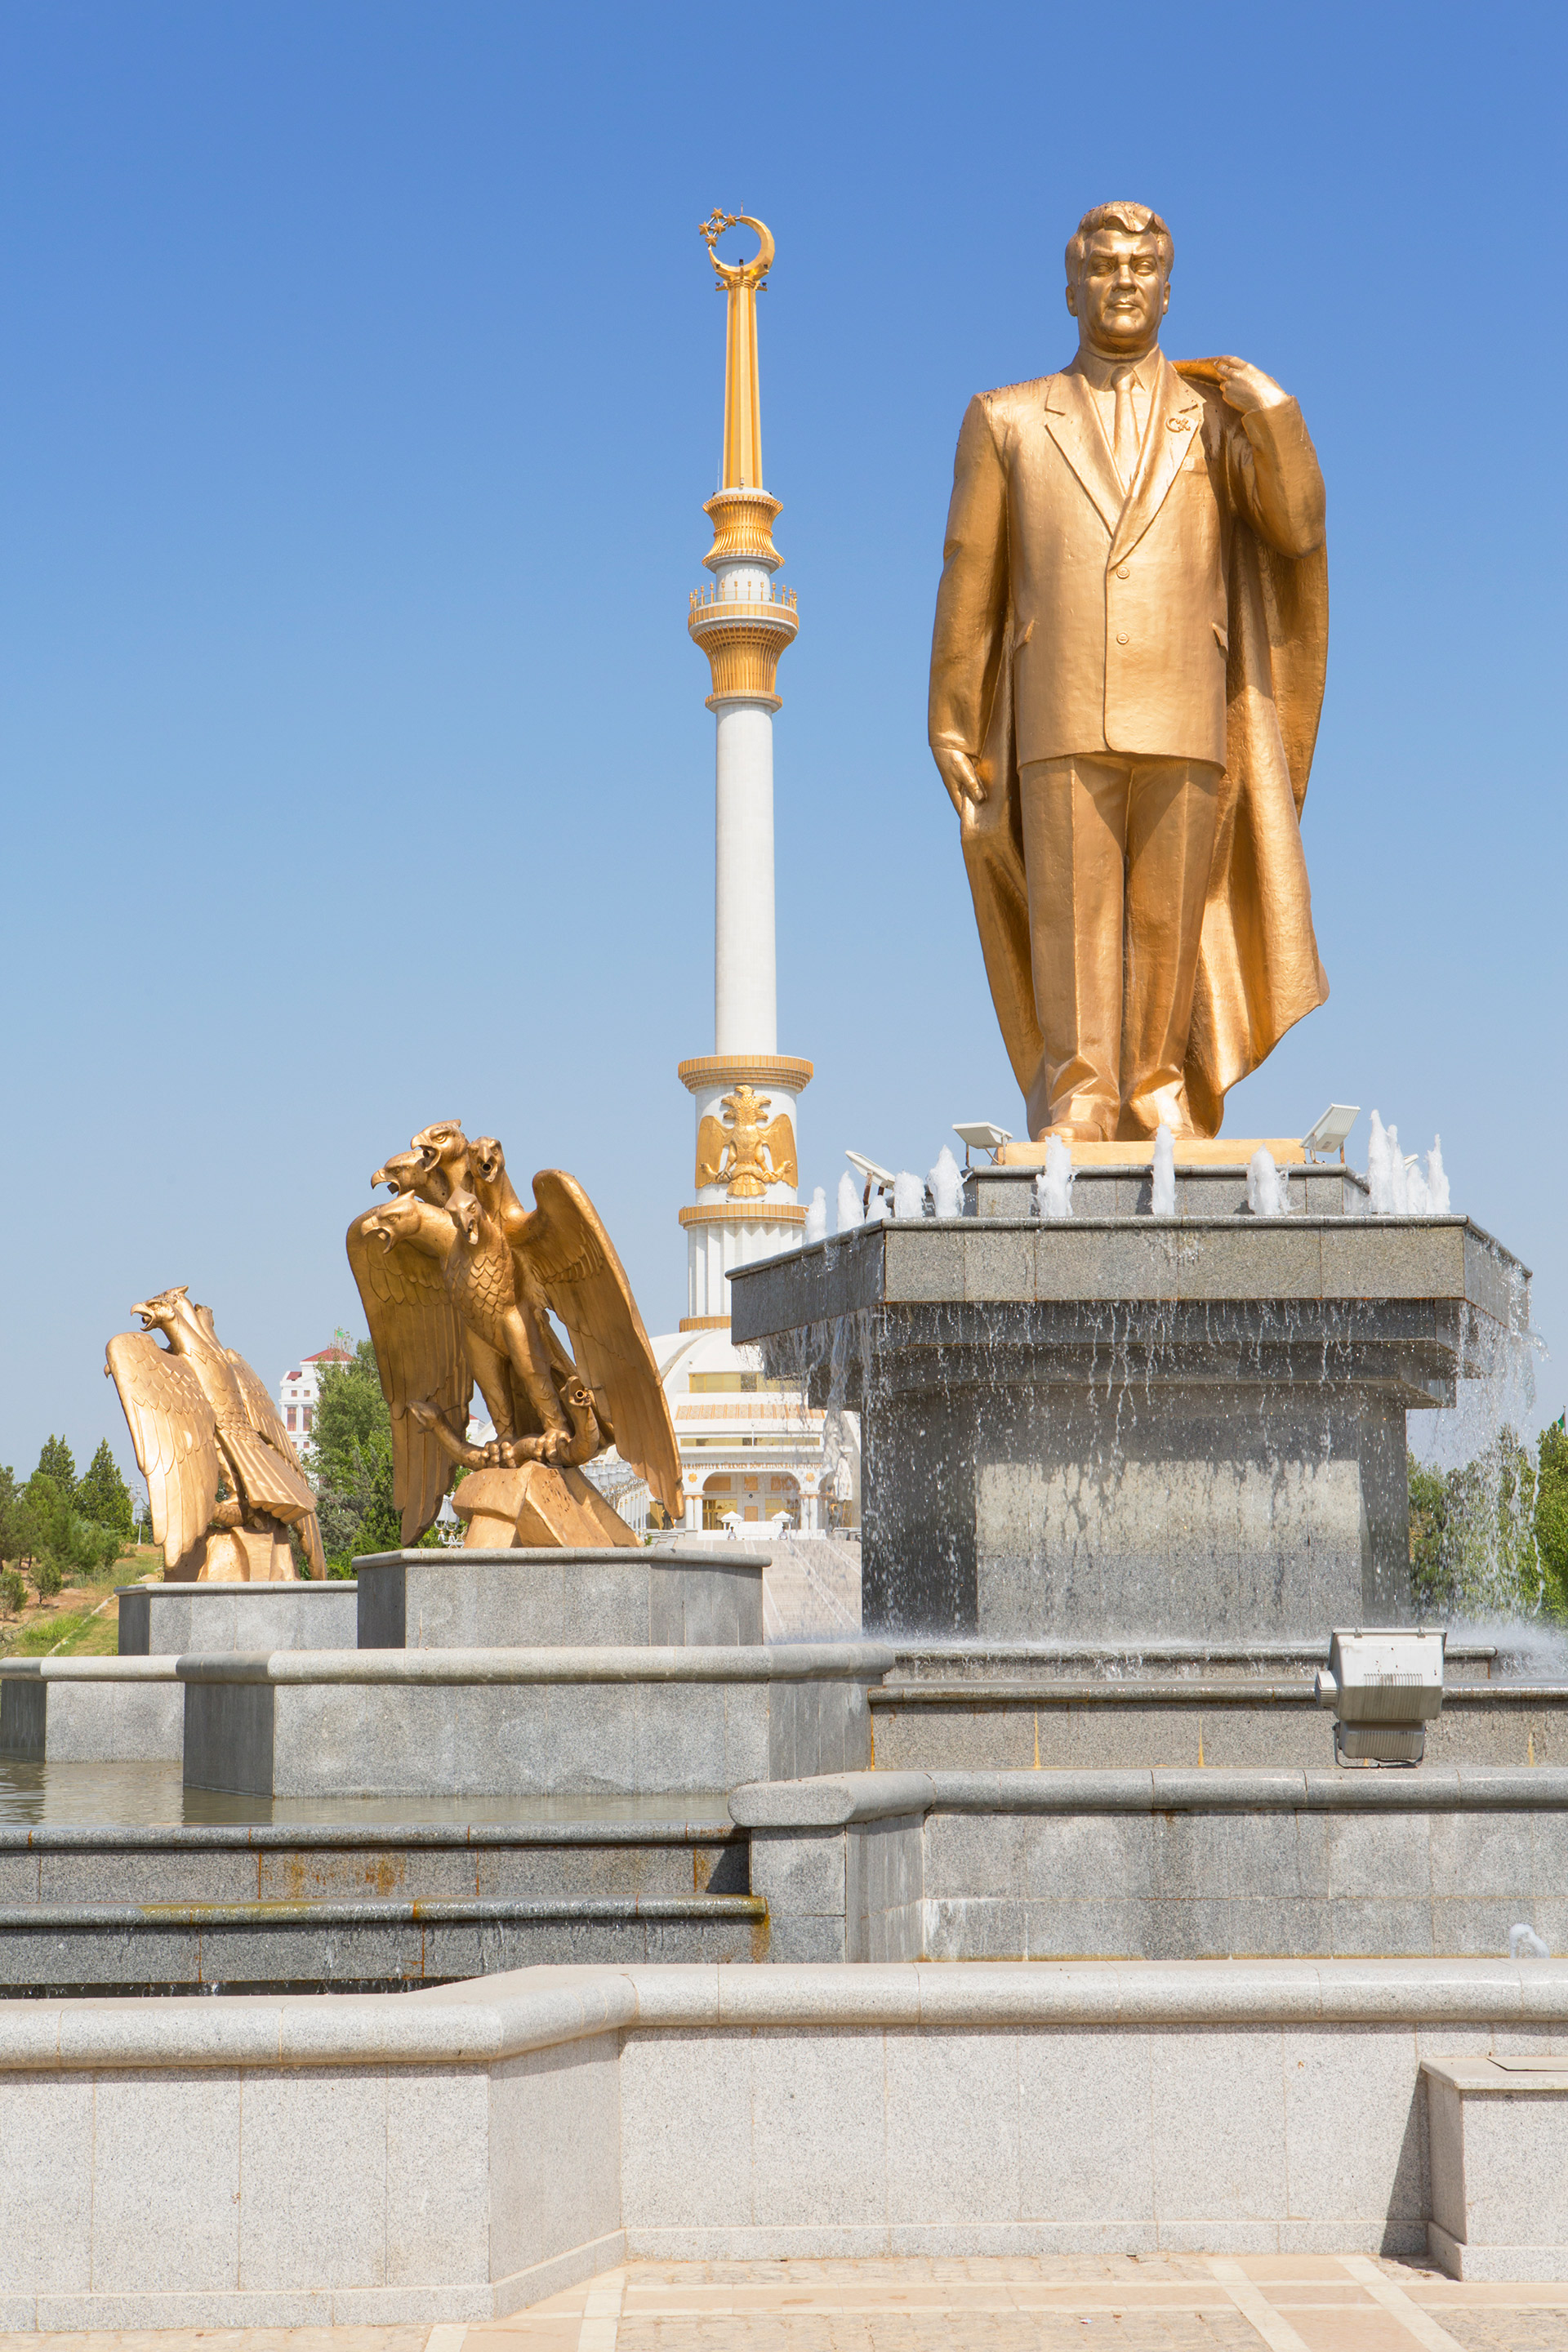 Una estatua dorada con la figura del ex presidente de Turkmenistán, Saparmurat Niyazov, que promovió un culto a su persona durante sus 21 años de gobierno